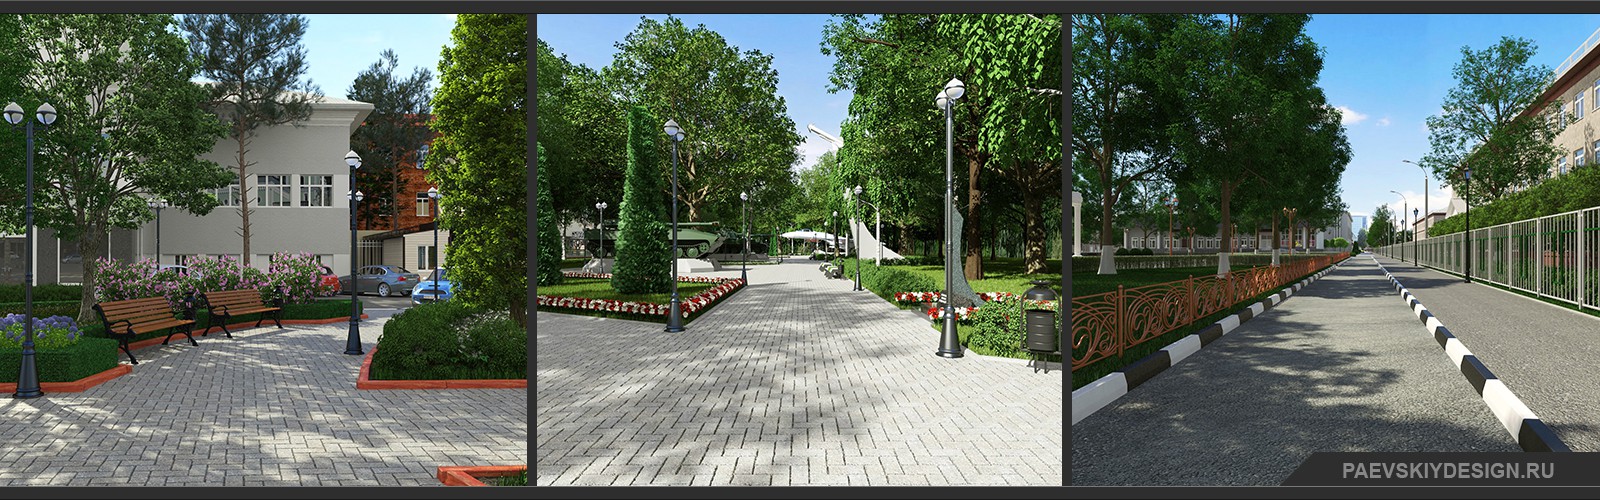 Ландшафтный дизайн территории участка, дизайн скверов и парков